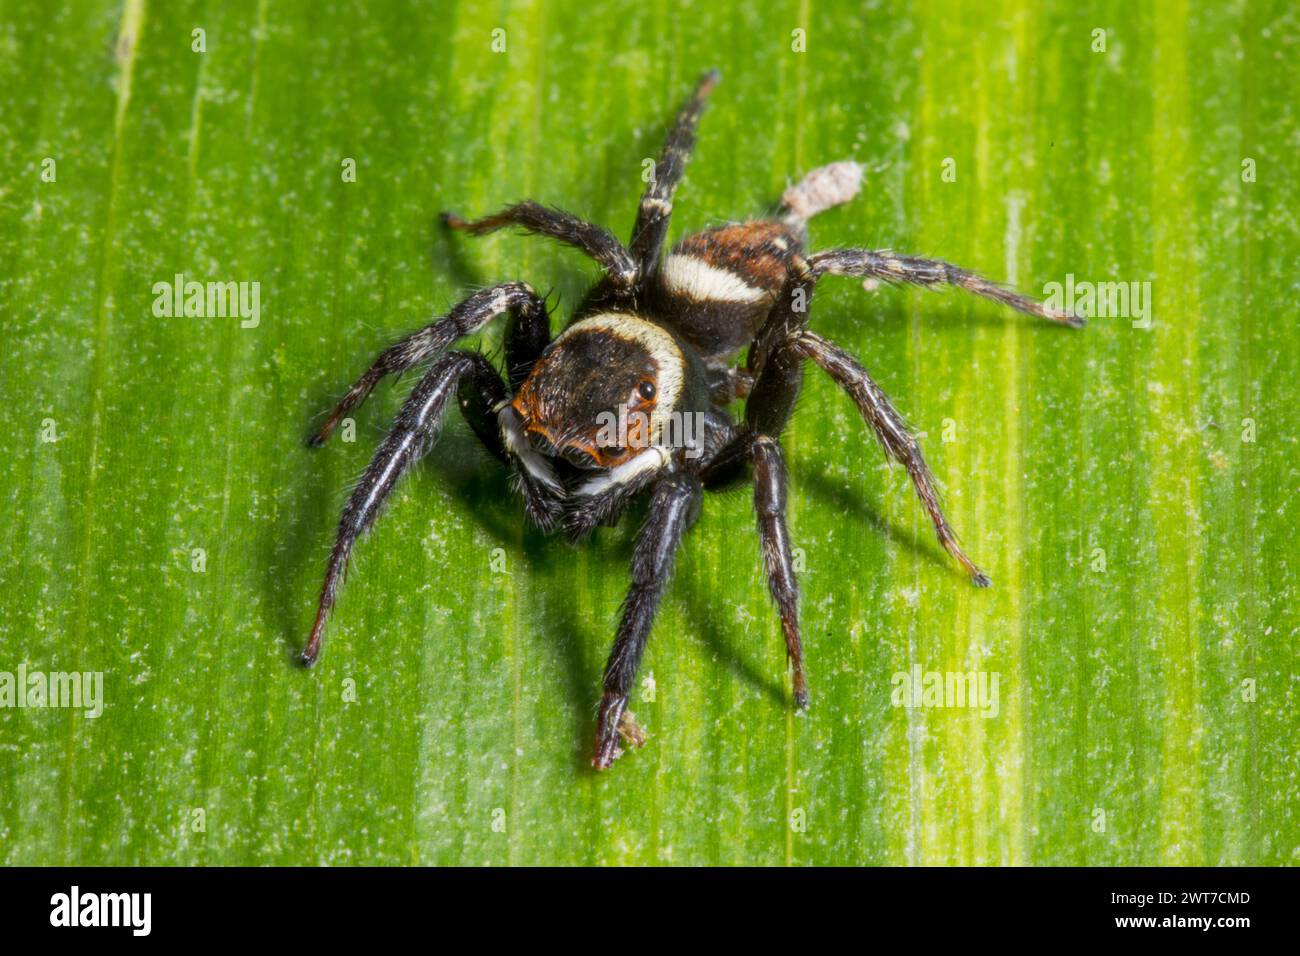 Adansons Hausspringer Jumping Spider (Hasarius adansoni) erwachsener Mann auf einem Blatt. Gefunden in einem Gartencenter. Carrmarthenshire, Wales. November. Stockfoto